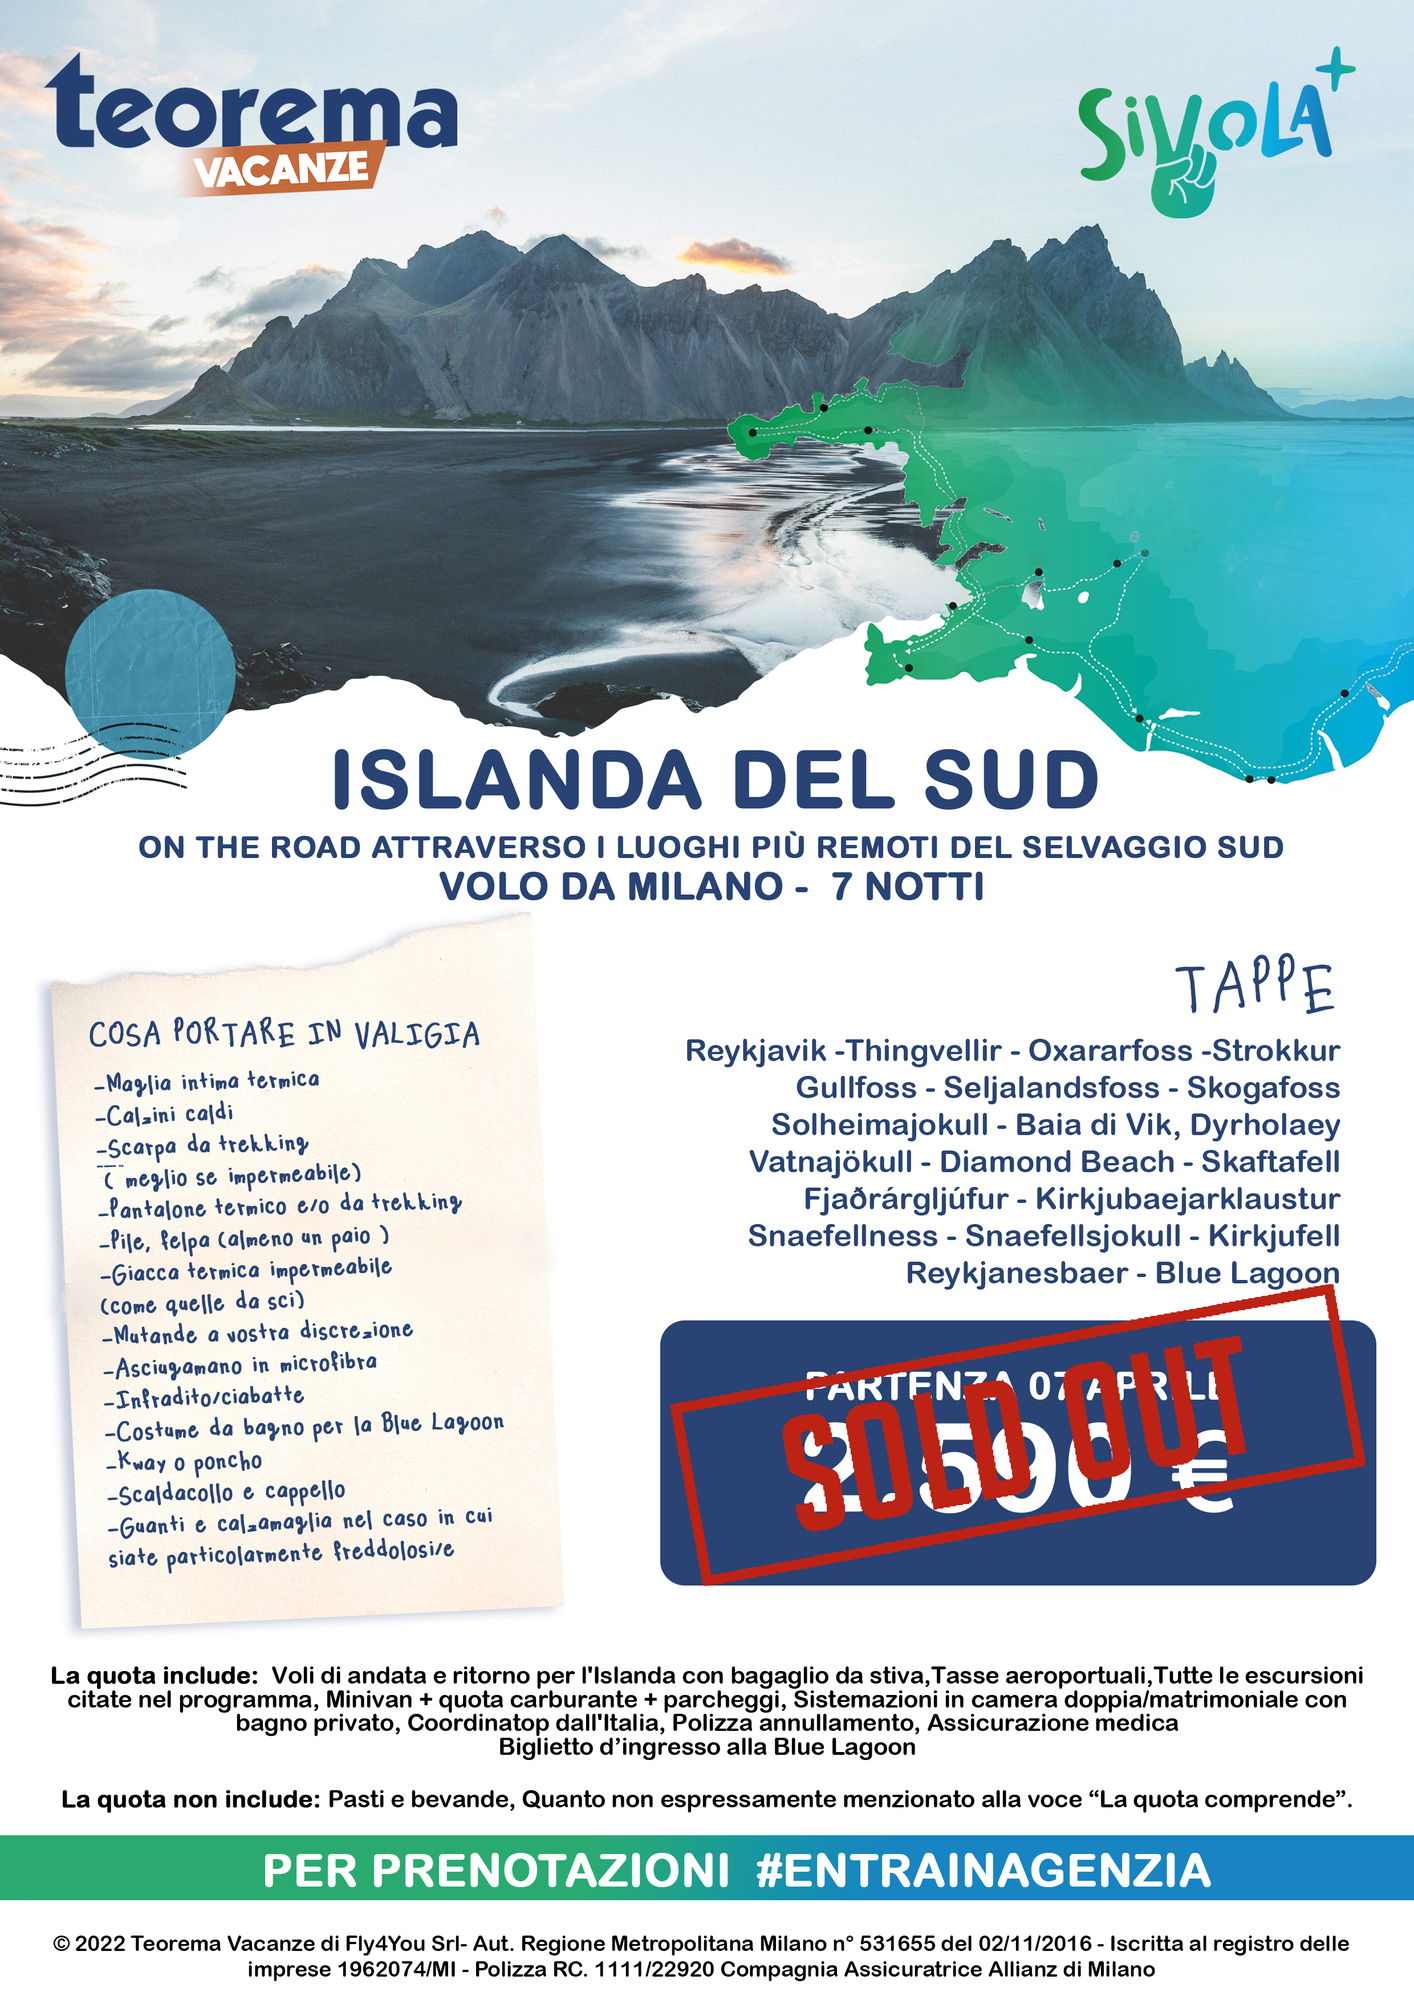 TOUR SIVOLA+ - ISLANDA